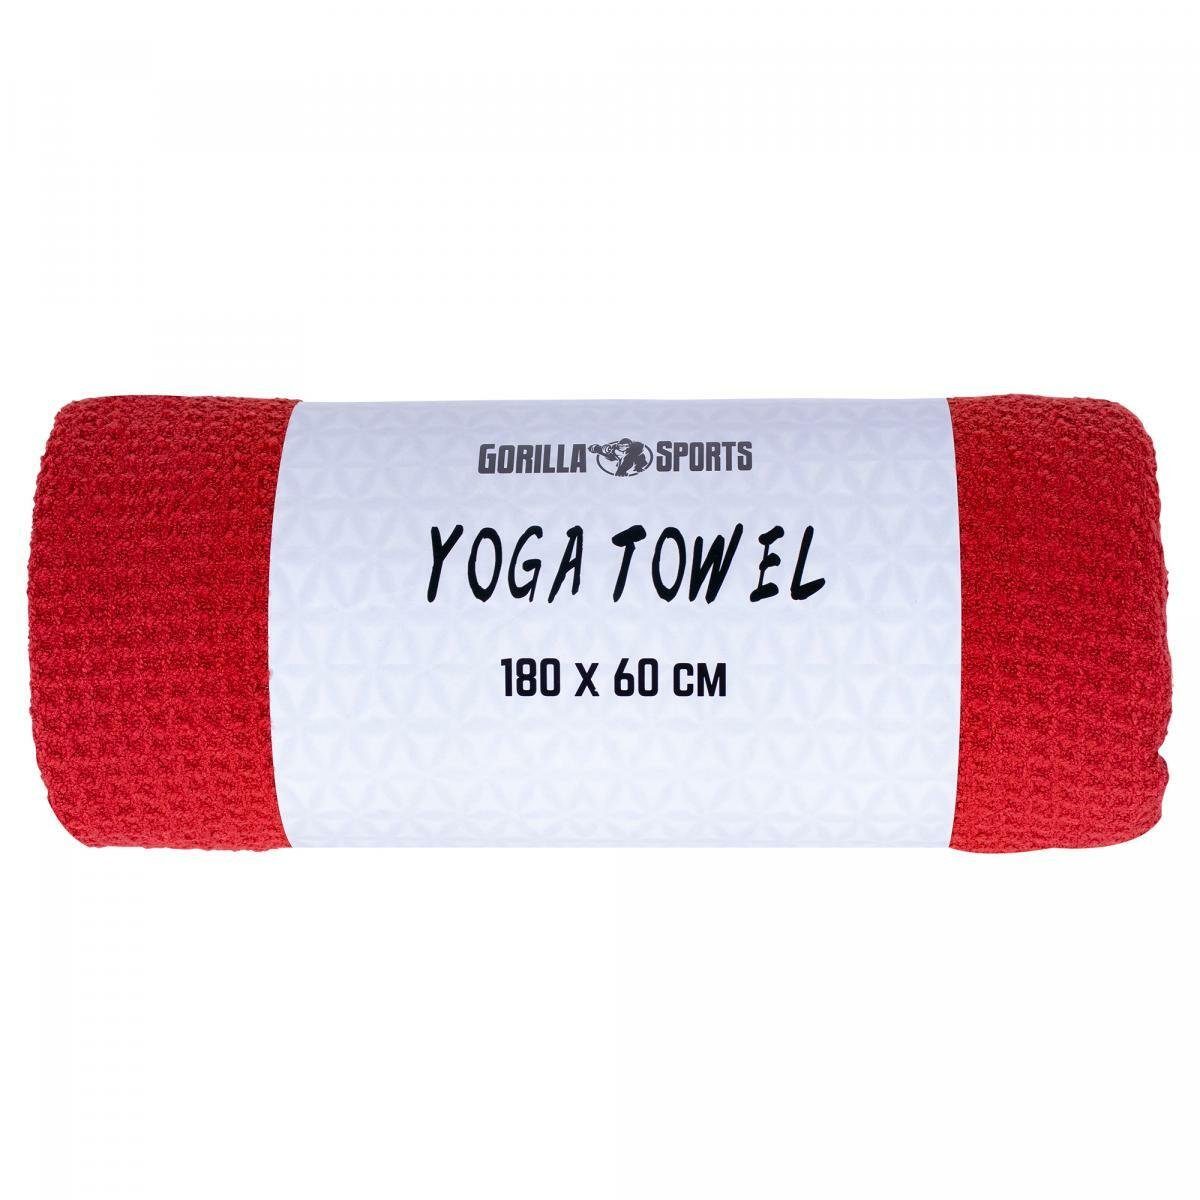 GORILLA SPORTS Sporthandtuch Yoga Handtuch 180x60cm, Towel, Strandtuch, Saugfähig, Schnelltrocknend Dunkelrot